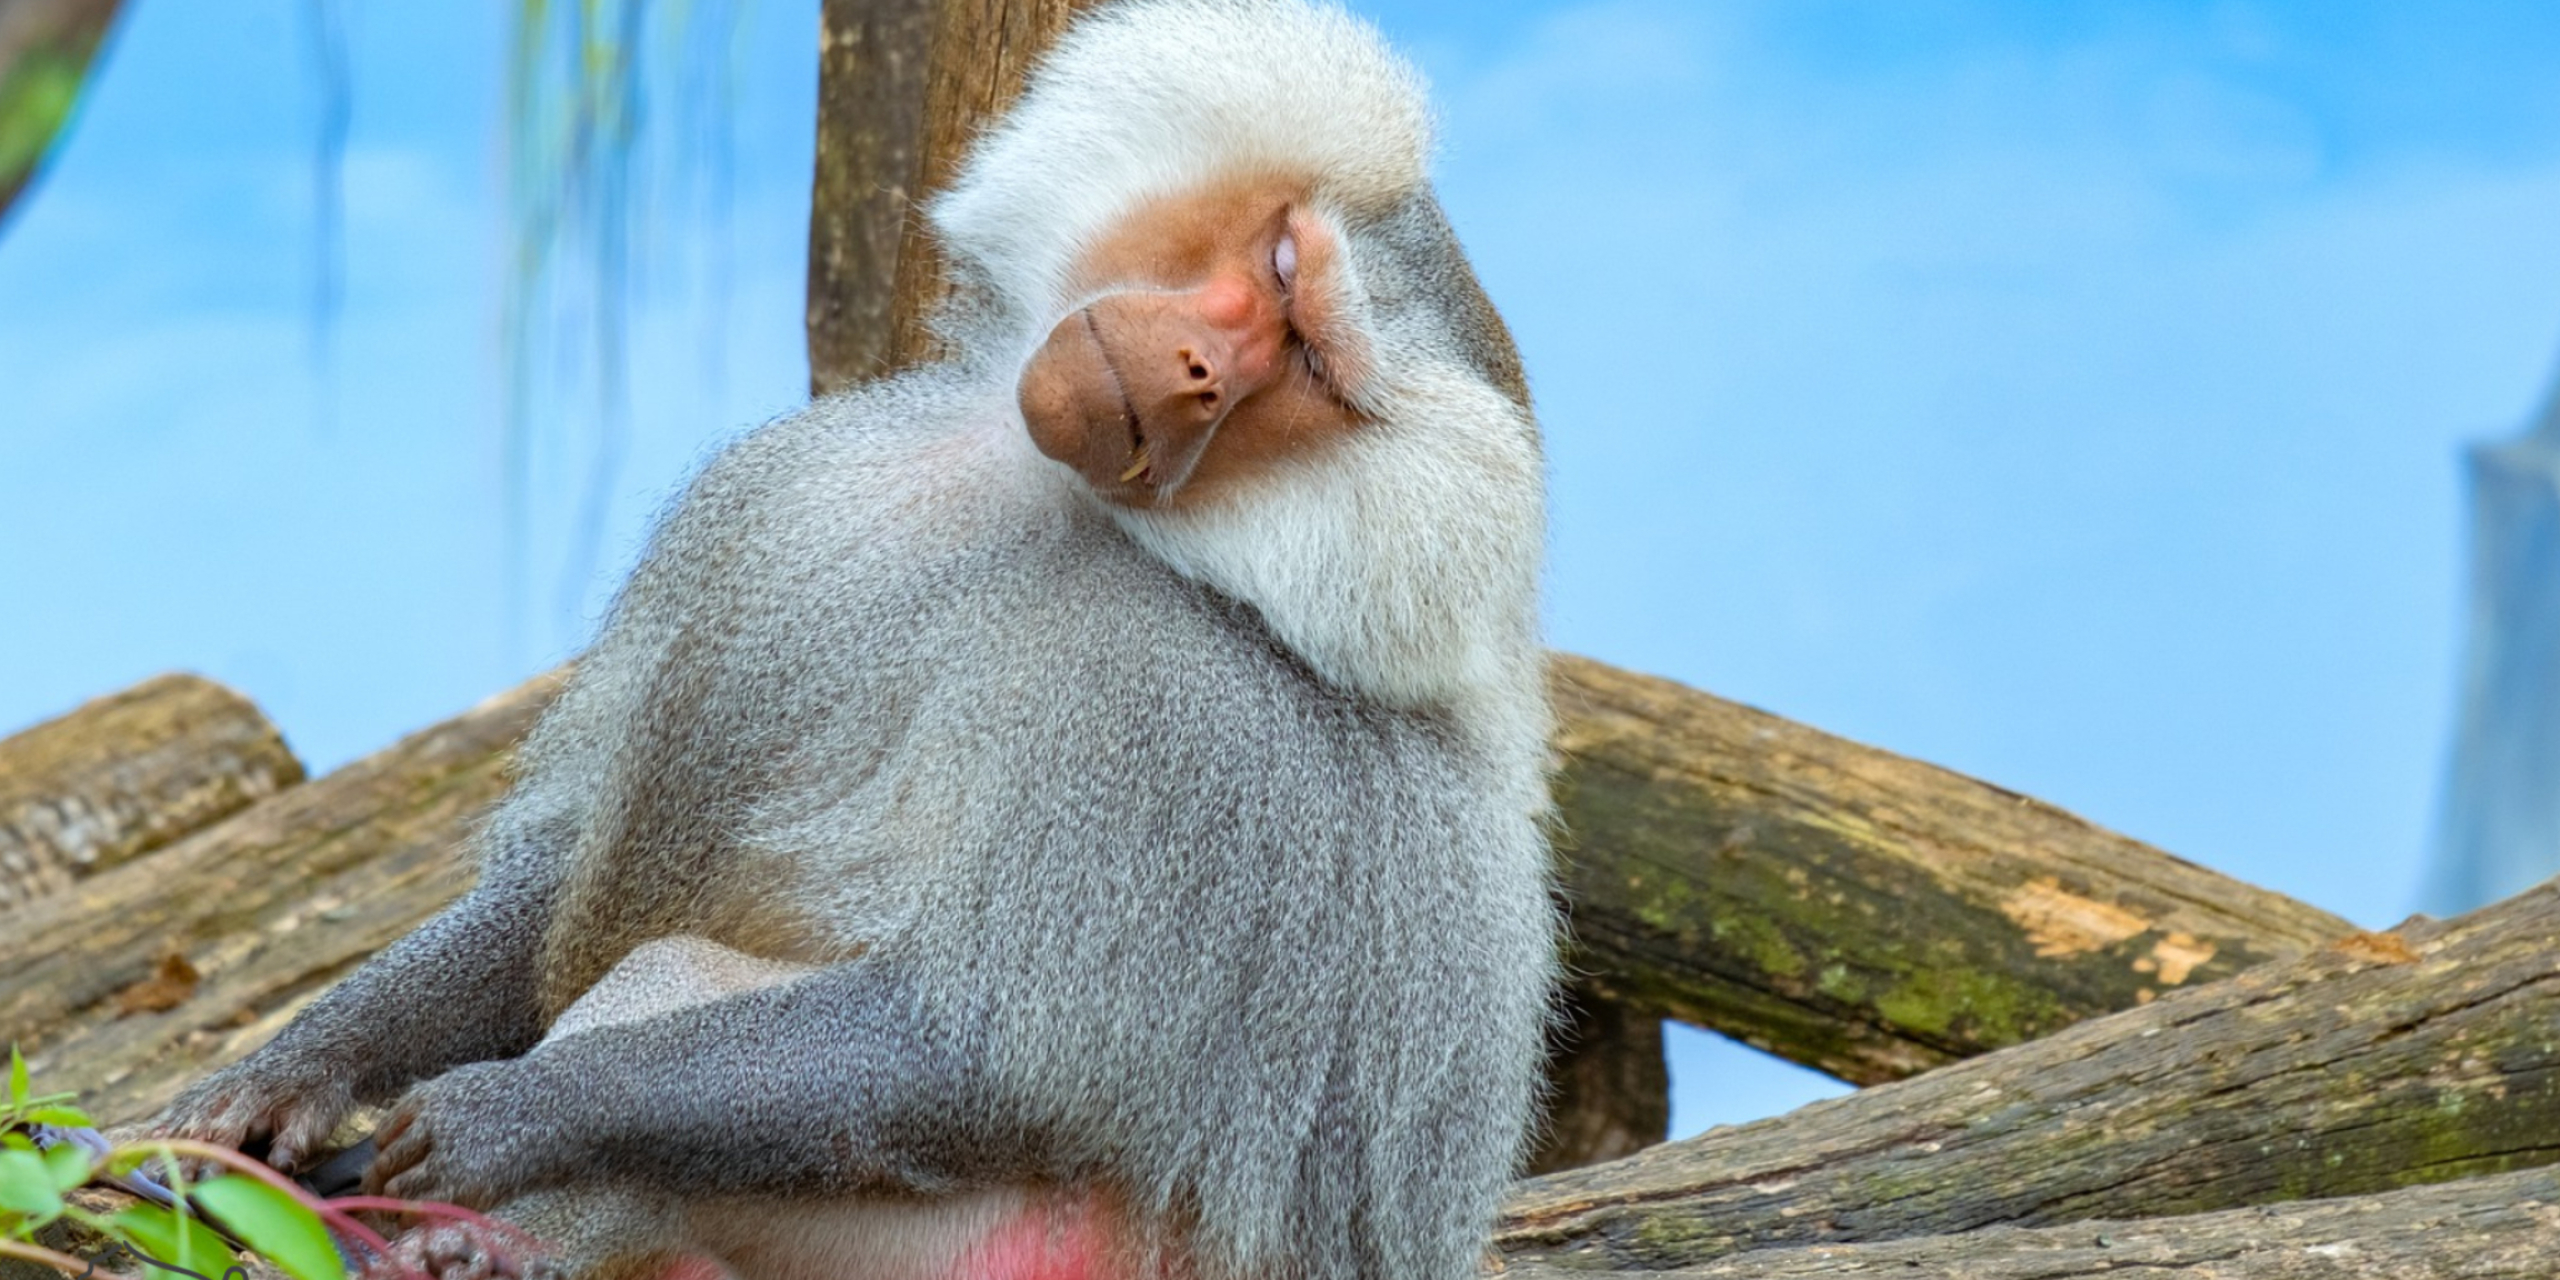 Majestic baboon monkey, HD wildlife portrait, Regal presence, Untamed beauty, 2560x1280 Dual Screen Desktop